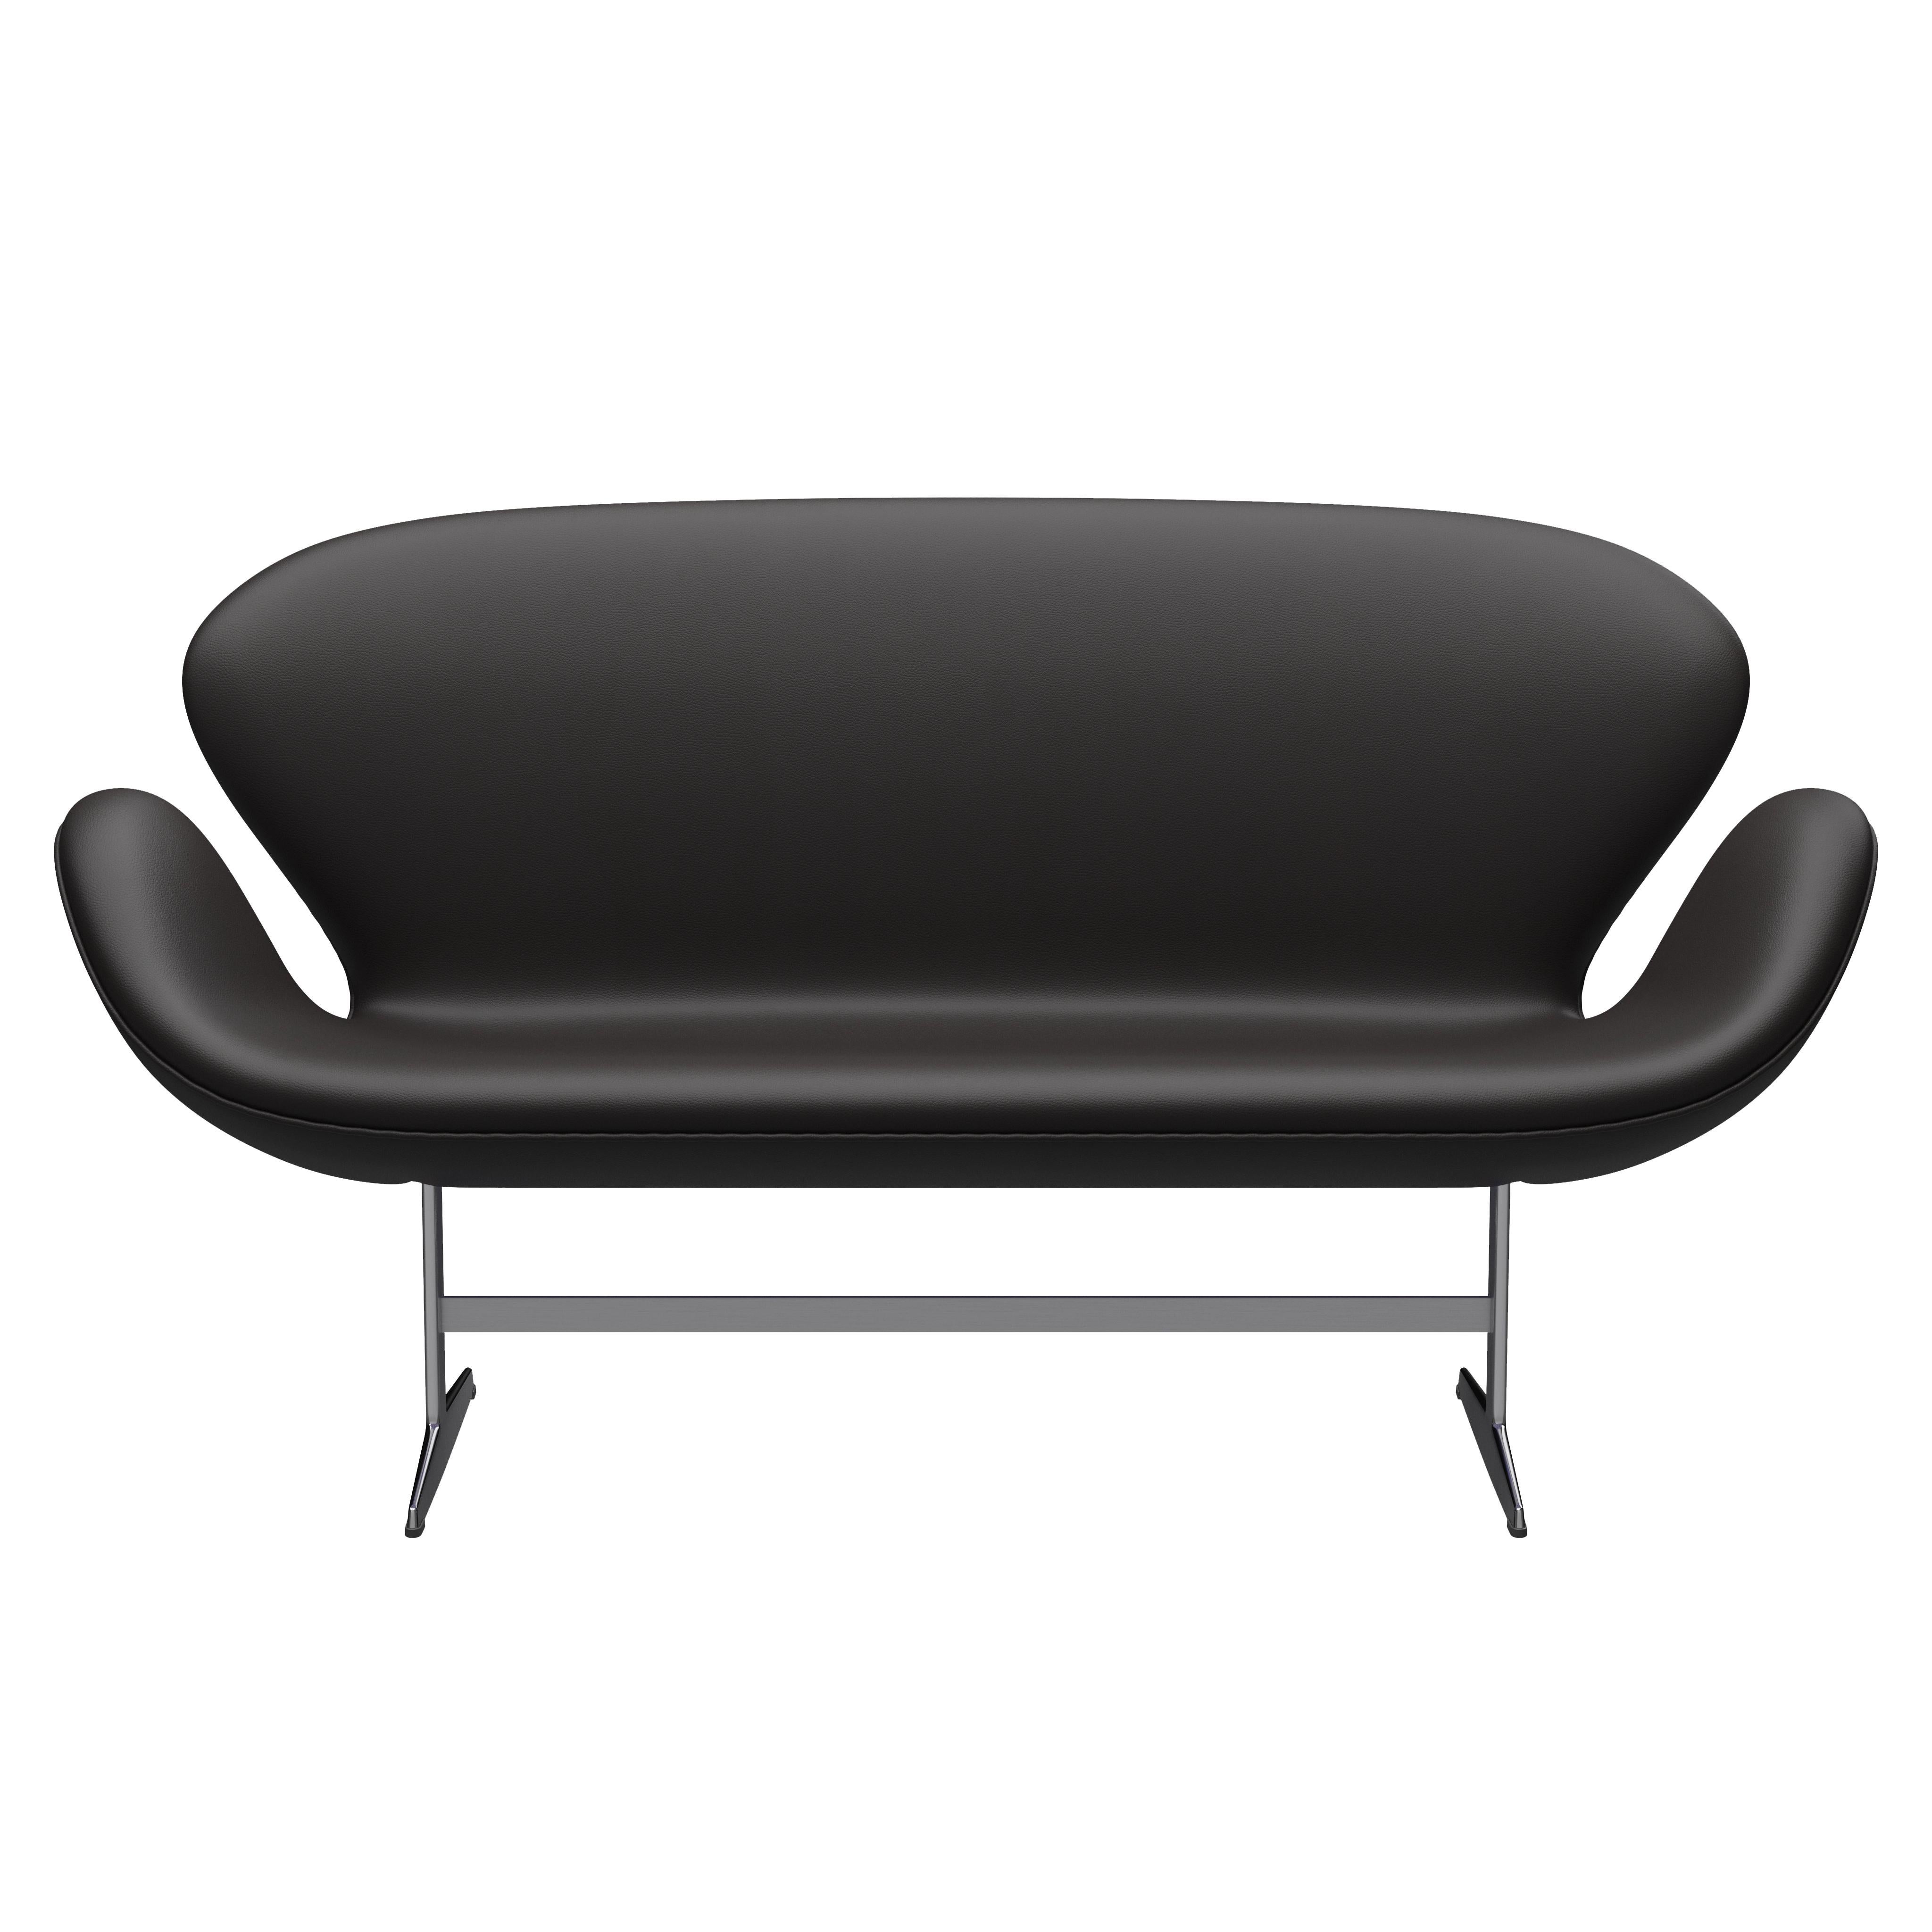 Arne Jacobsen 'Swan' Sofa for Fritz Hansen in Leather Upholstery (Cat. 4) For Sale 3